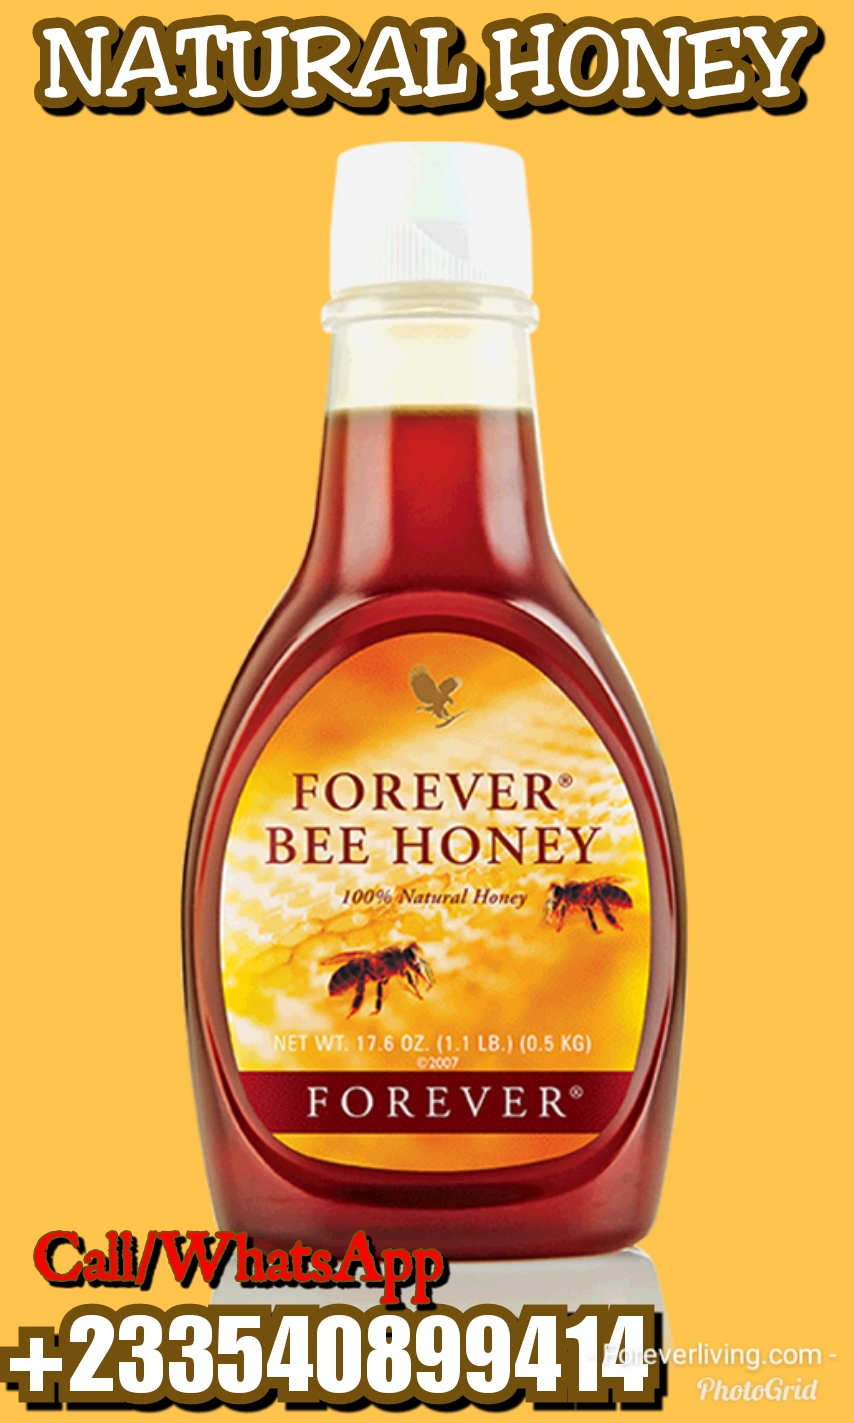 FOREVER BEE HONEY